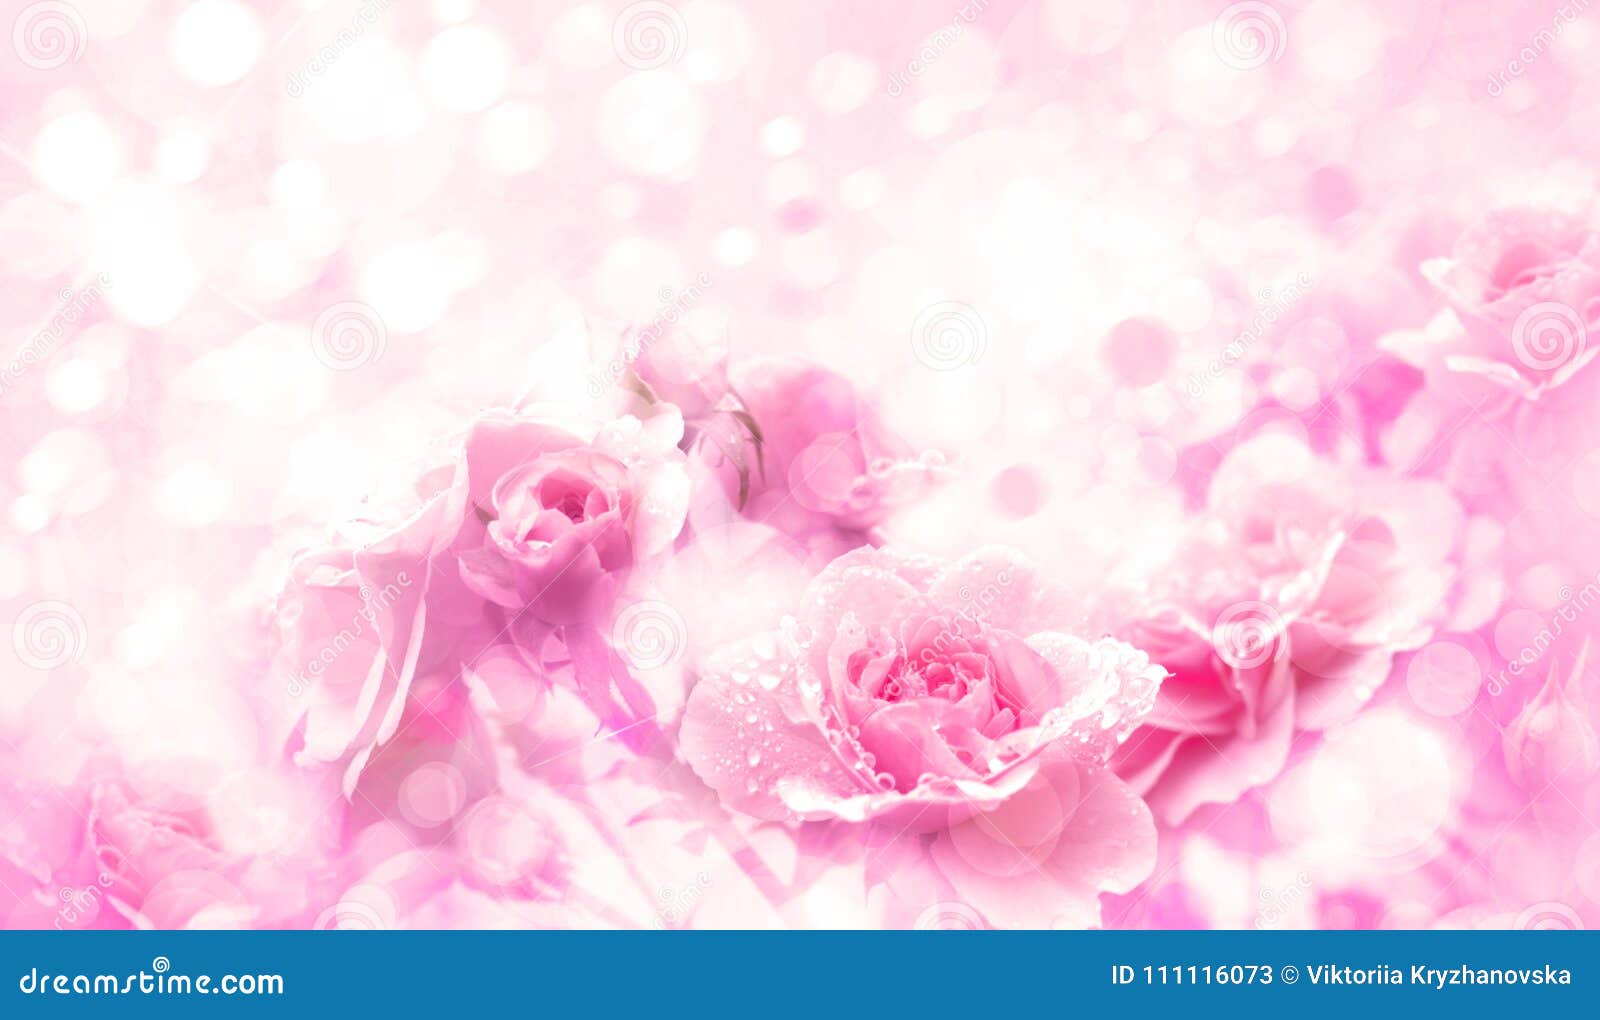 Fundo Cor-de-rosa Do Bokeh Das Flores Das Rosas Imagem de Stock - Imagem de  matriz, encarregado: 111116073